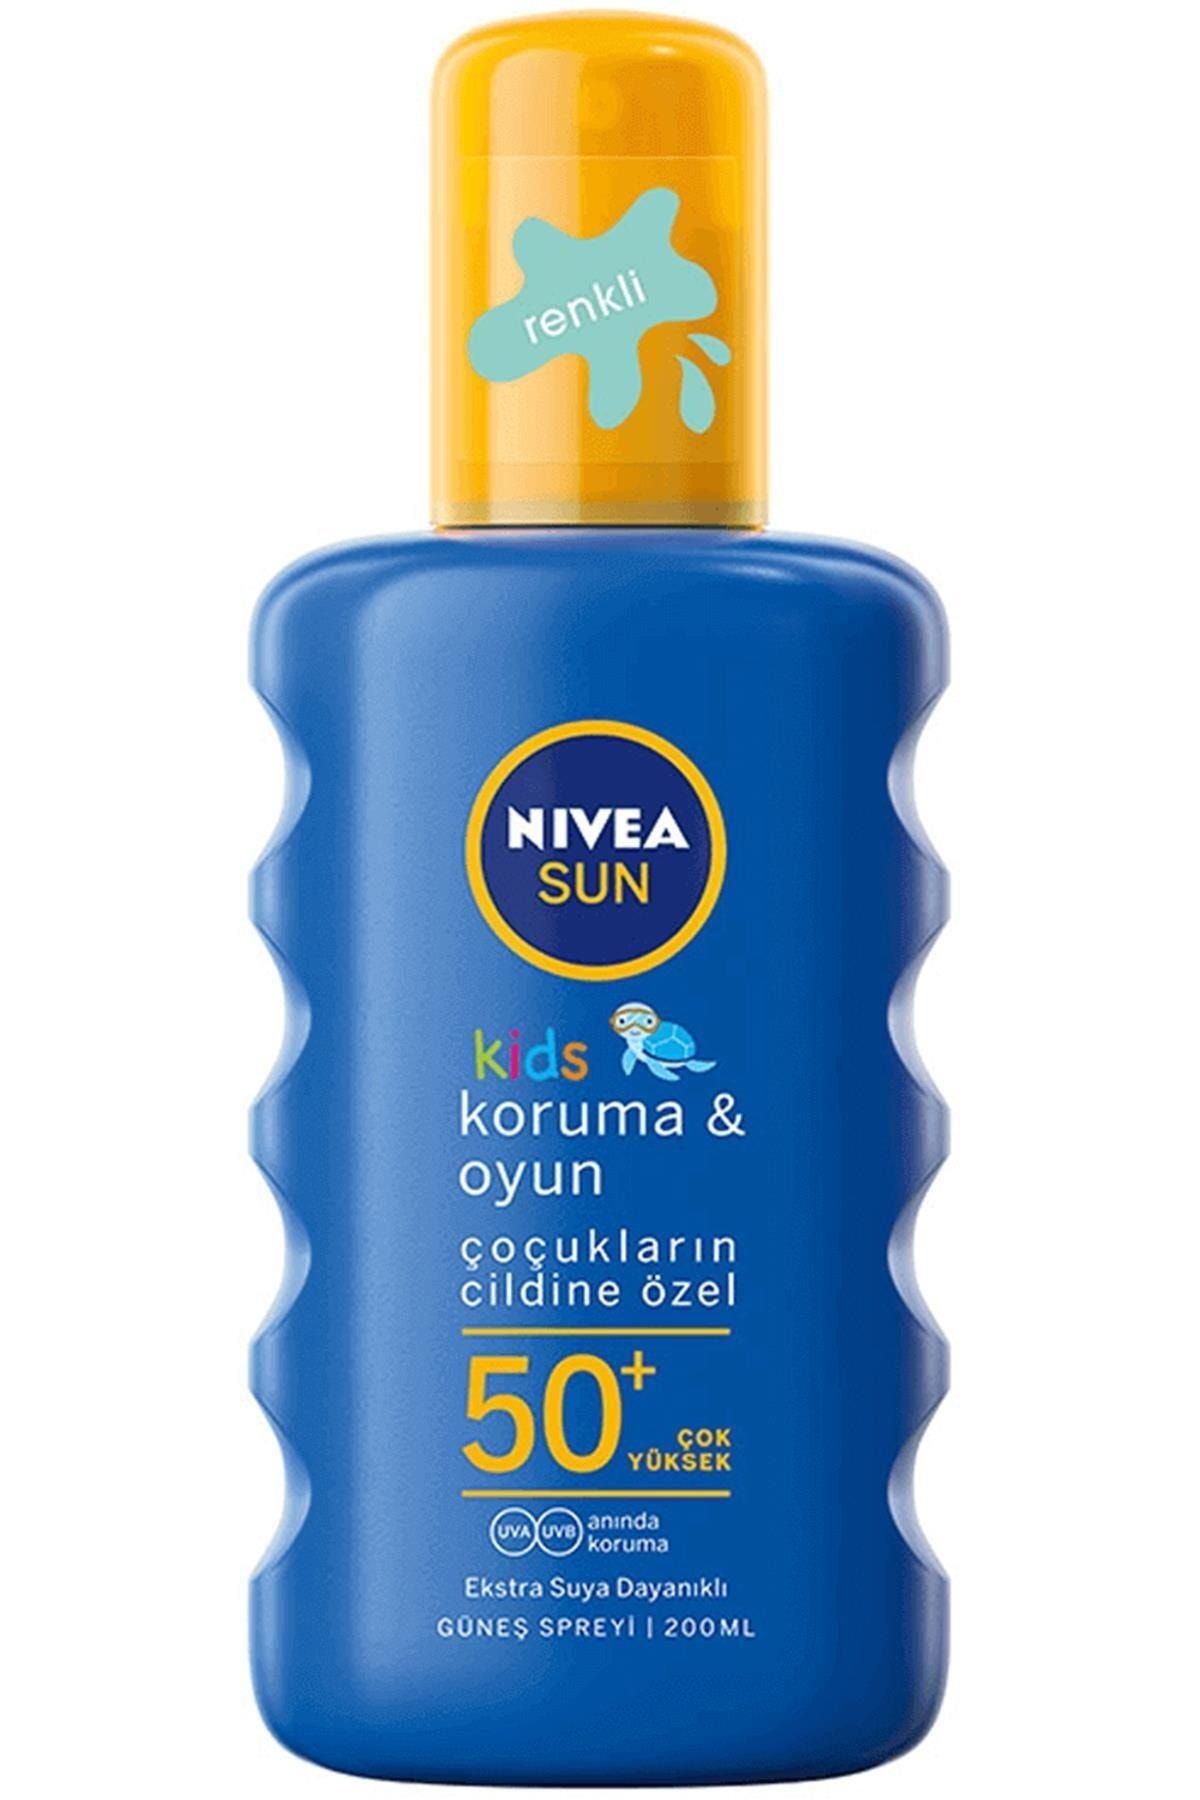 NIVEA Sun Koruma & Oyun Çocuk Güneş Spreyi Spf 50+